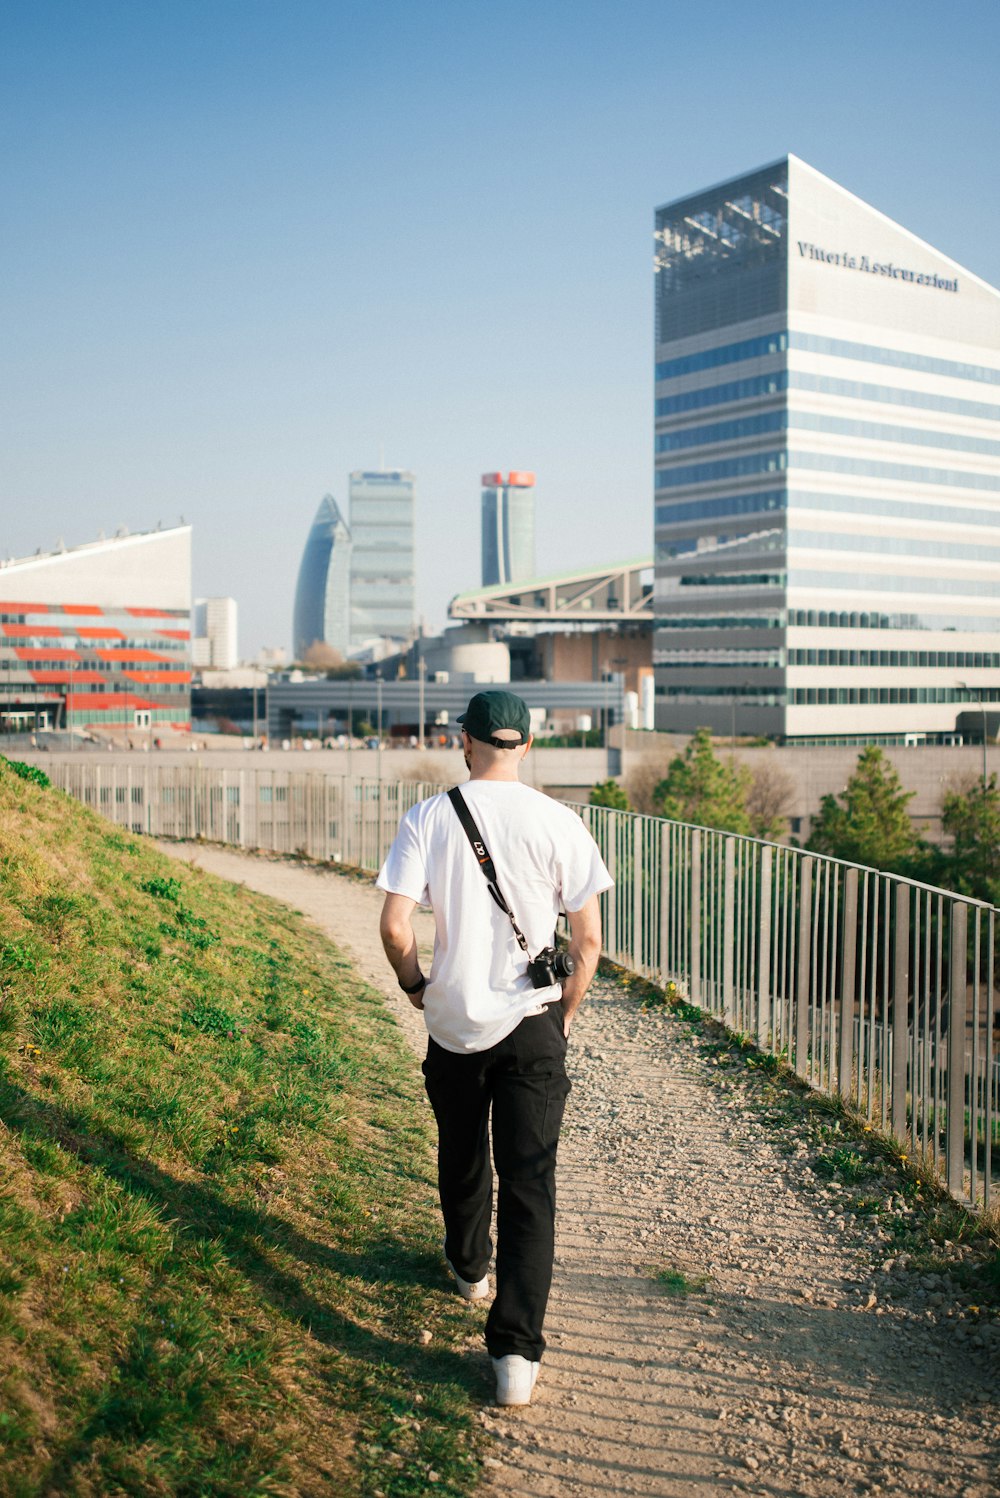 a man walking down a path in a city